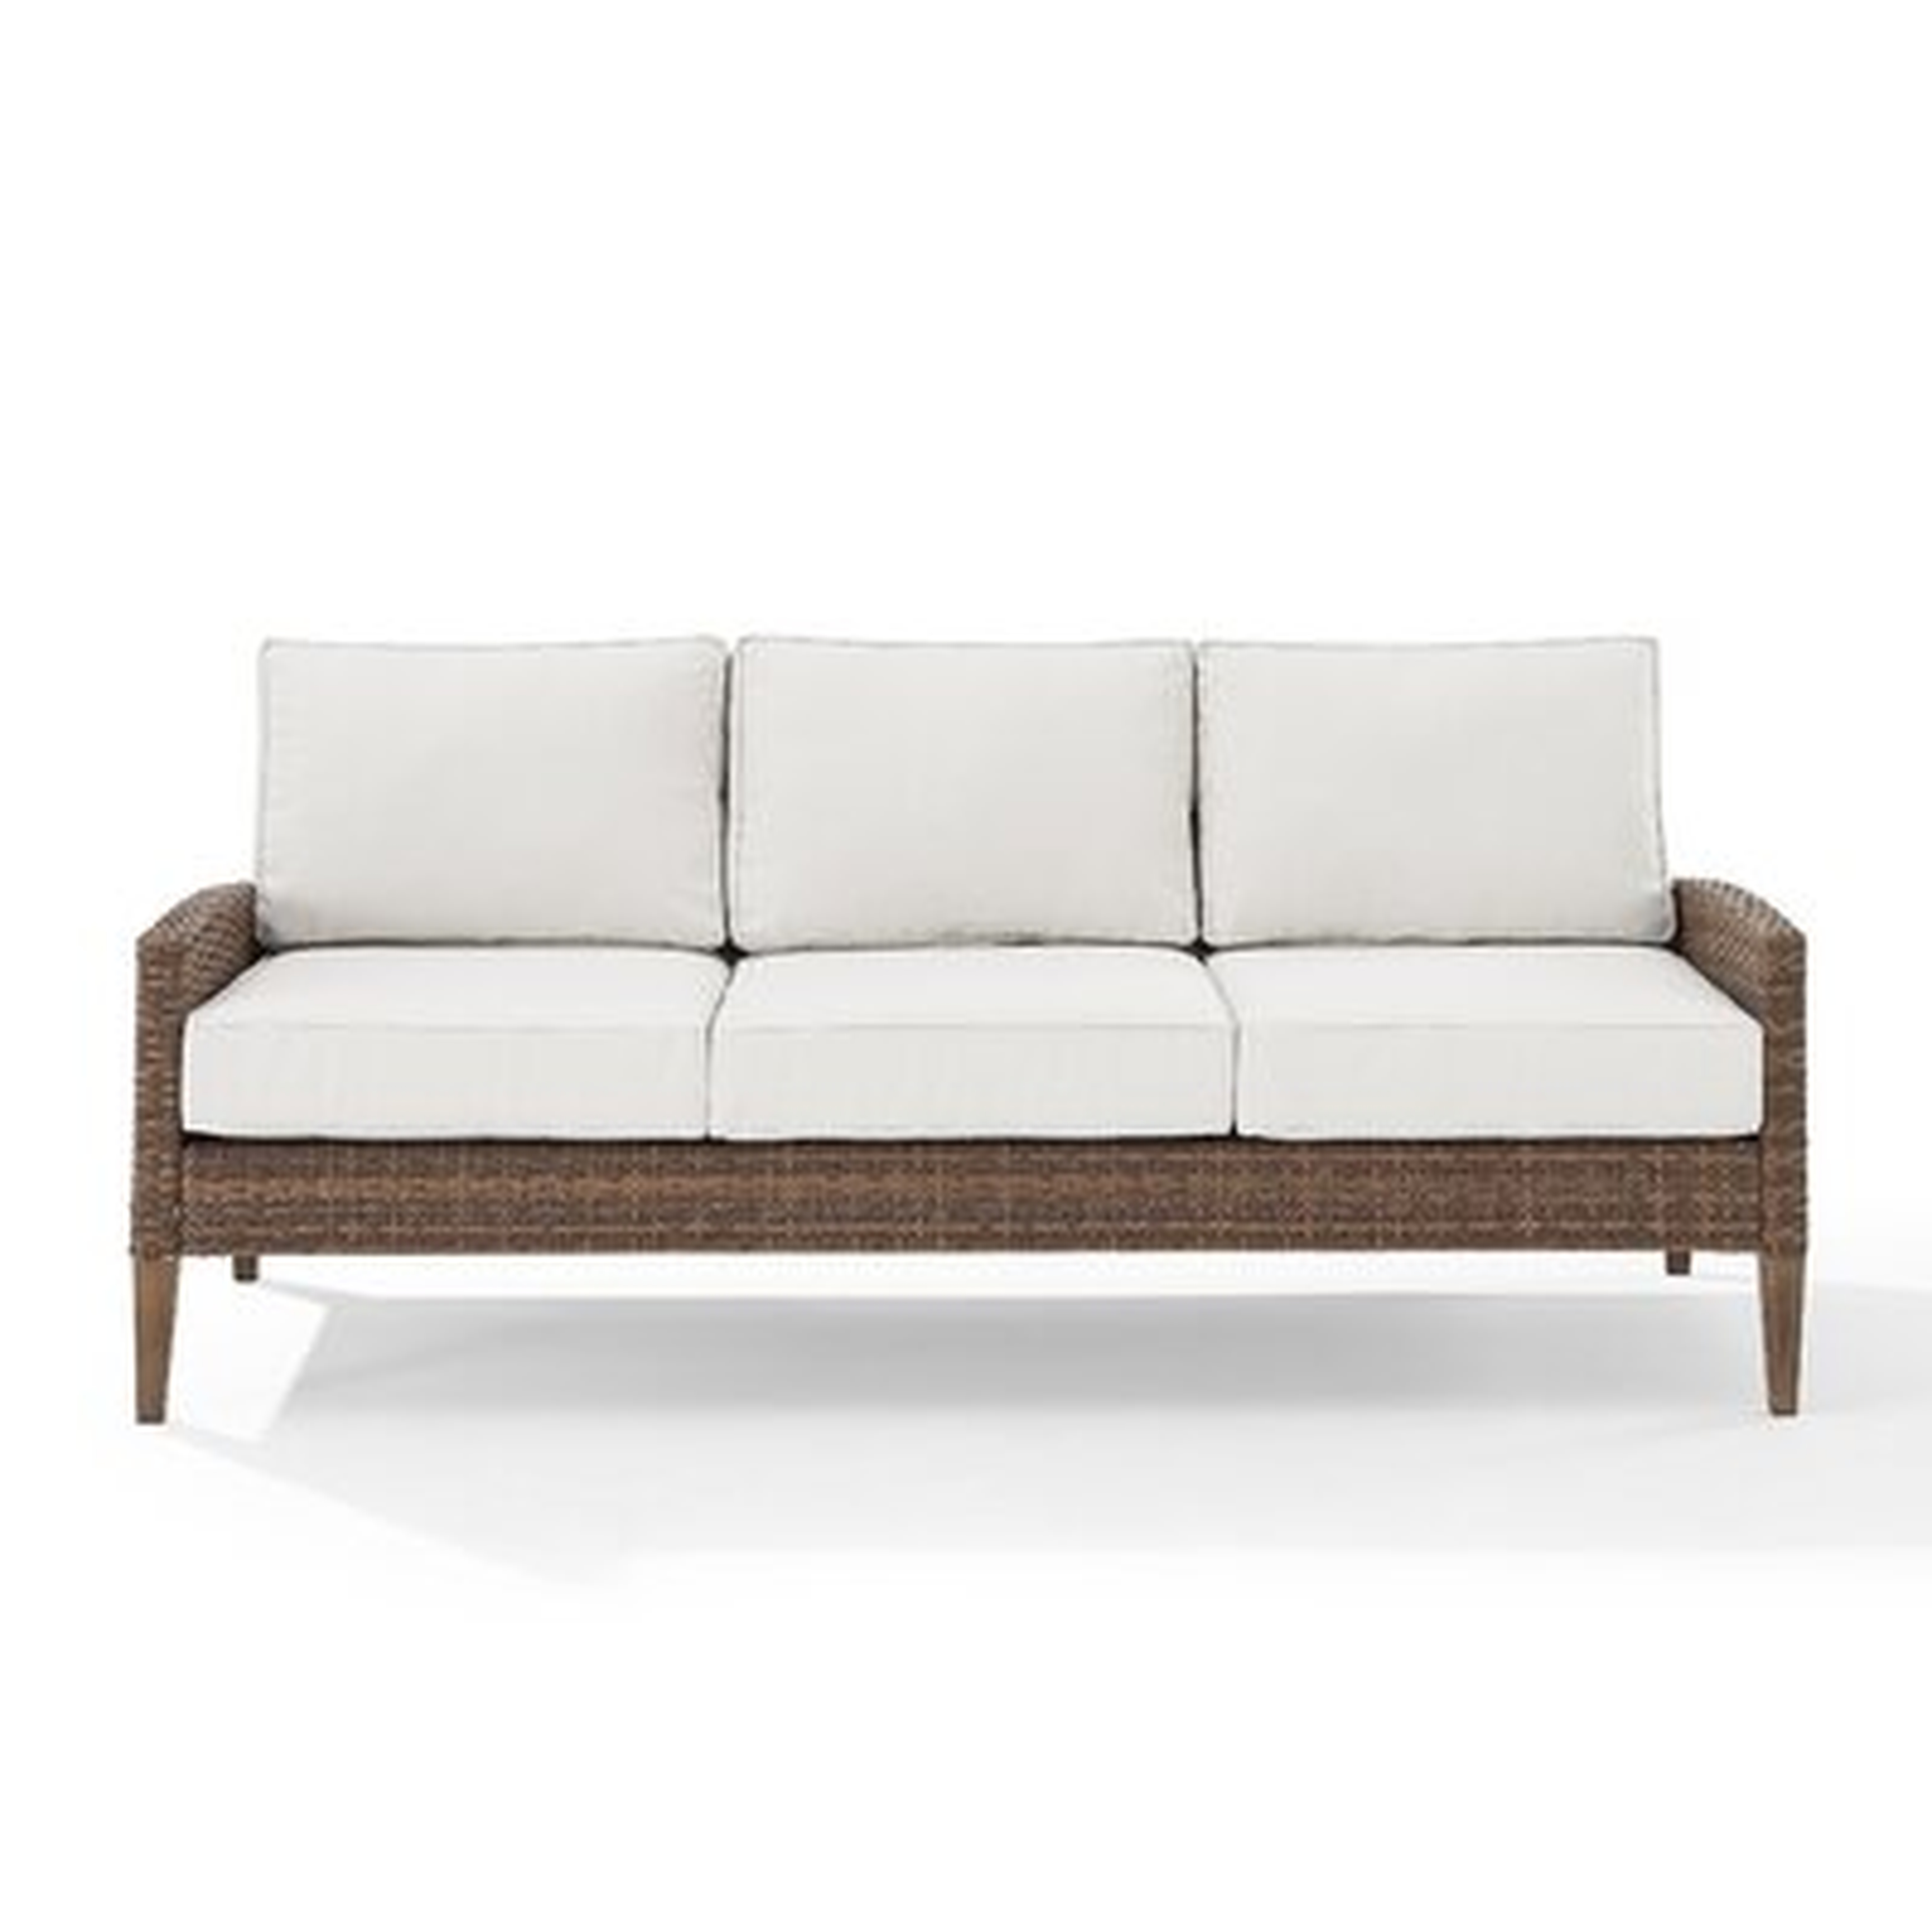 Capella Outdoor Wicker Sofa - Wayfair